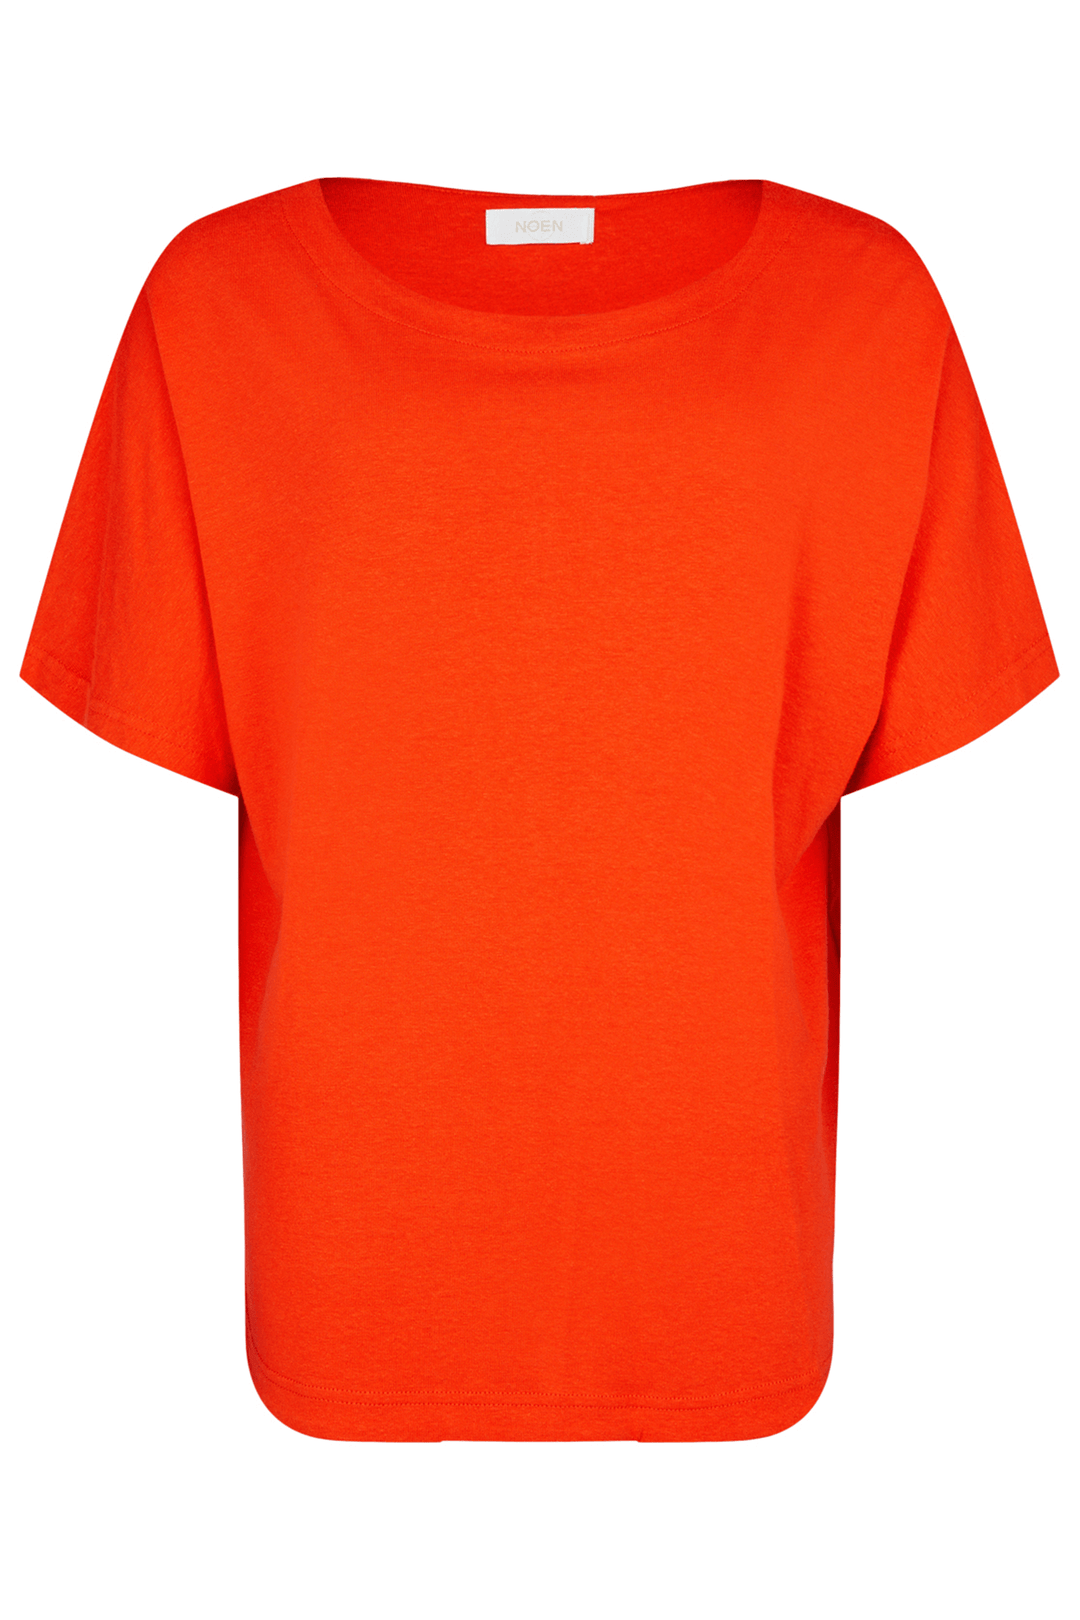 Noen 83312 81034 46 Orange T-Shirt - Experience Boutique